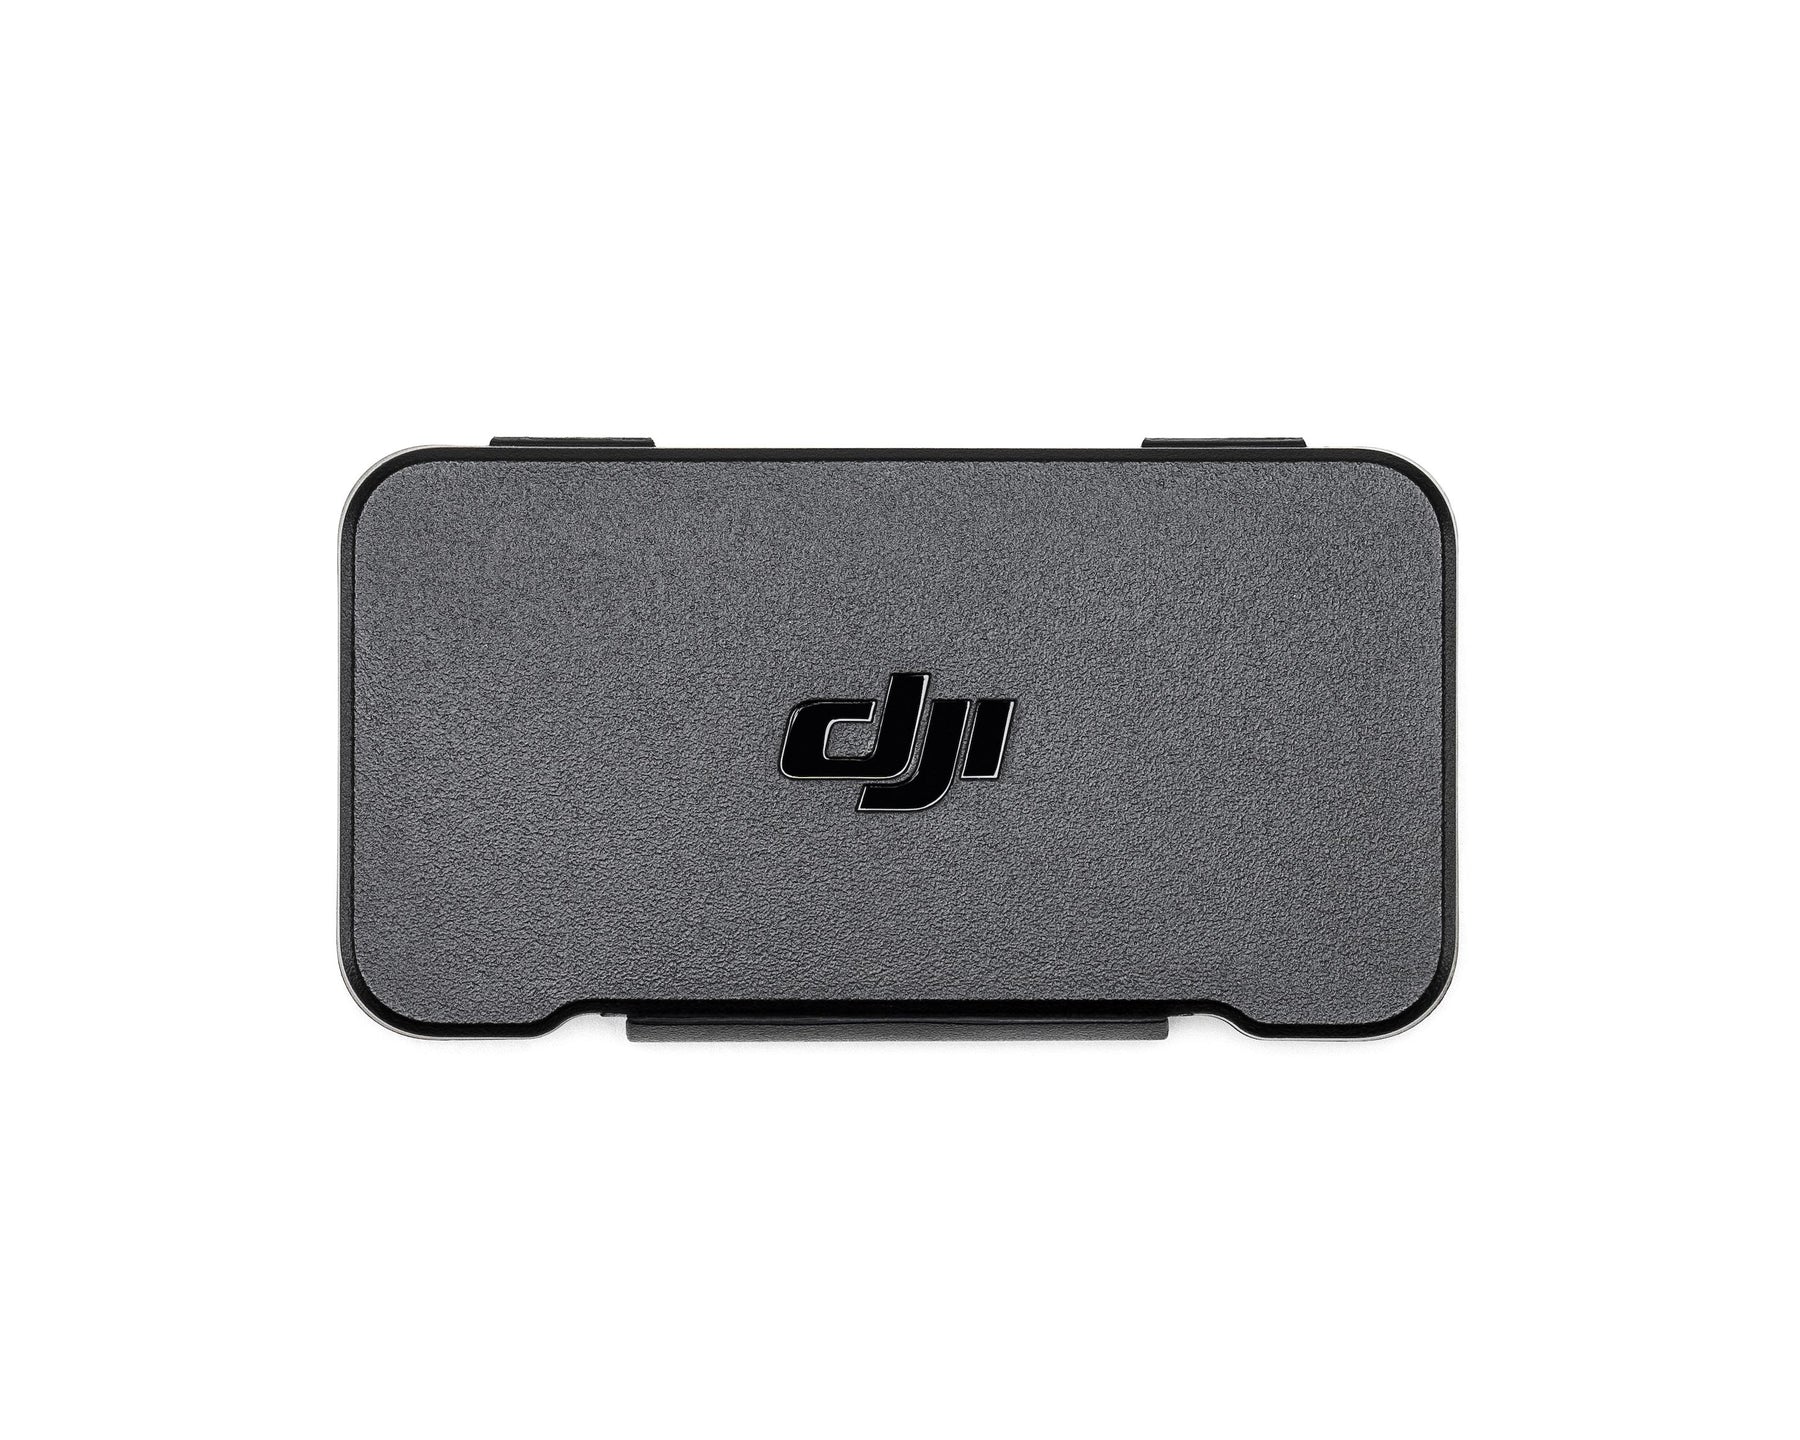 DJI Mini 4 Pro ND Filters Set (ND 16/64/256)